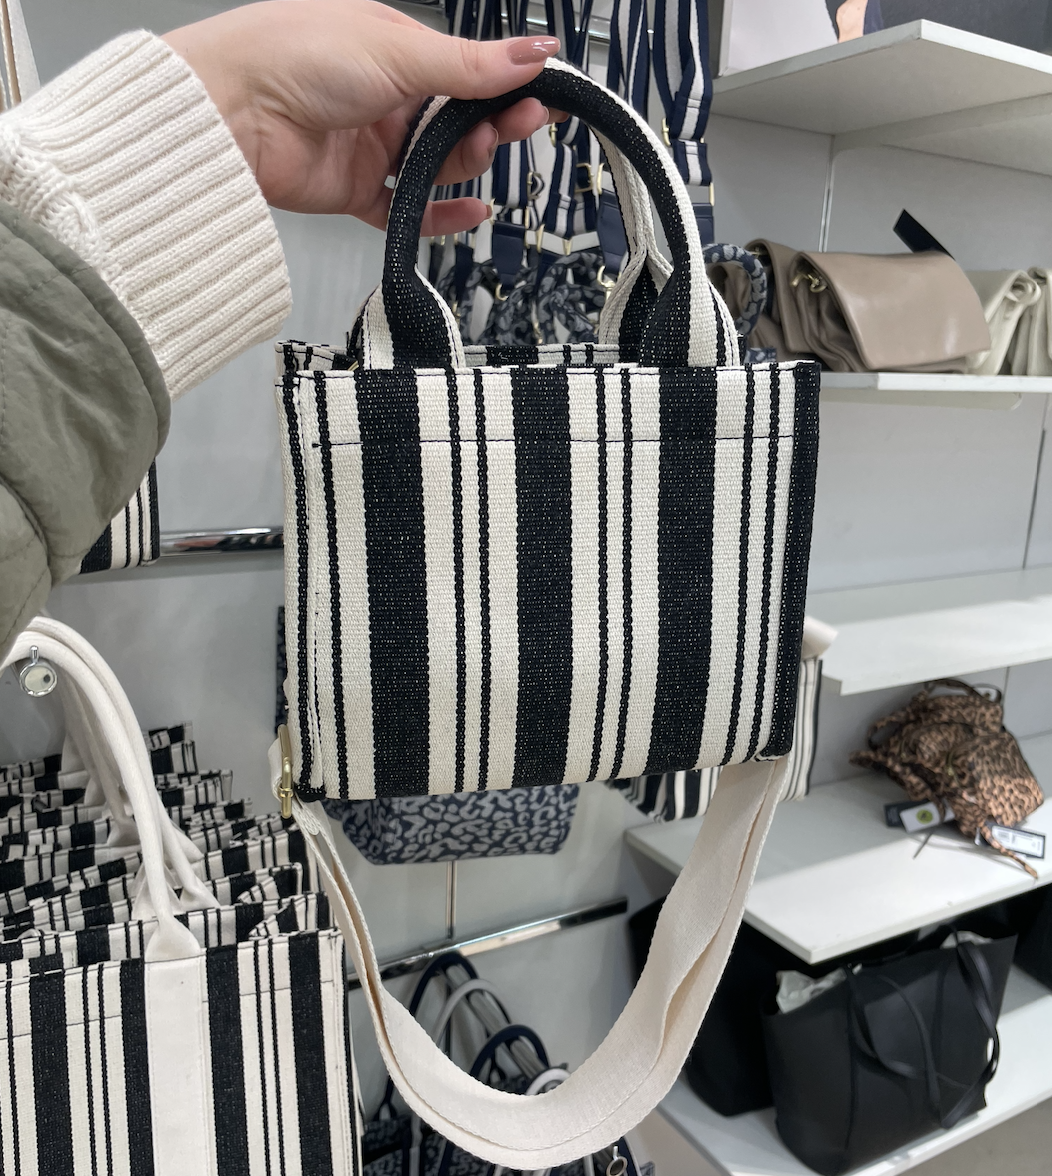 Purse/Handbag/tote Mario Hernandez Exclusive Design, Hand Made in Colombia  | eBay